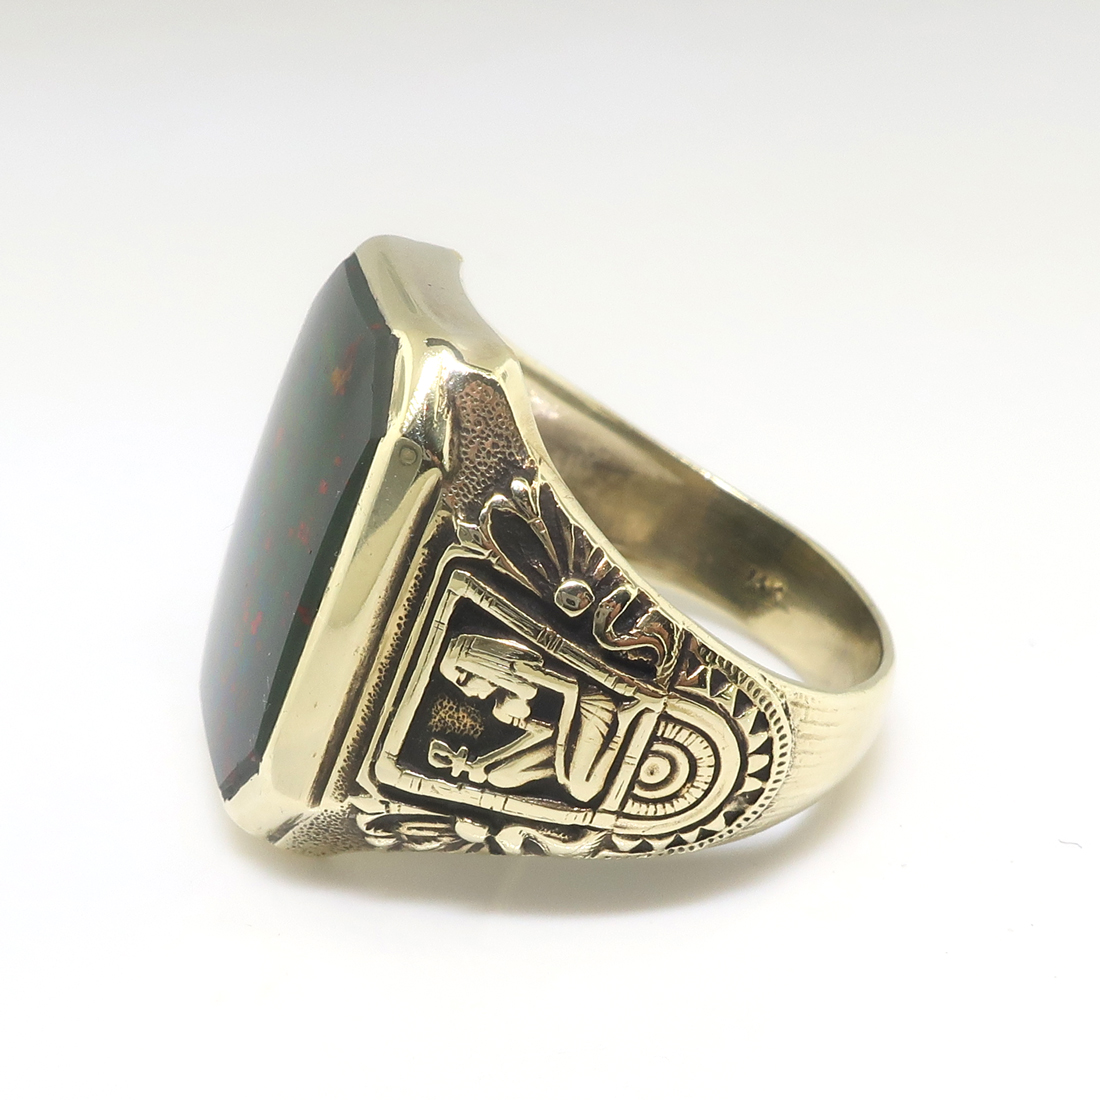 Antique Bloodstone Ring with Engraved Details – Gem Set Love